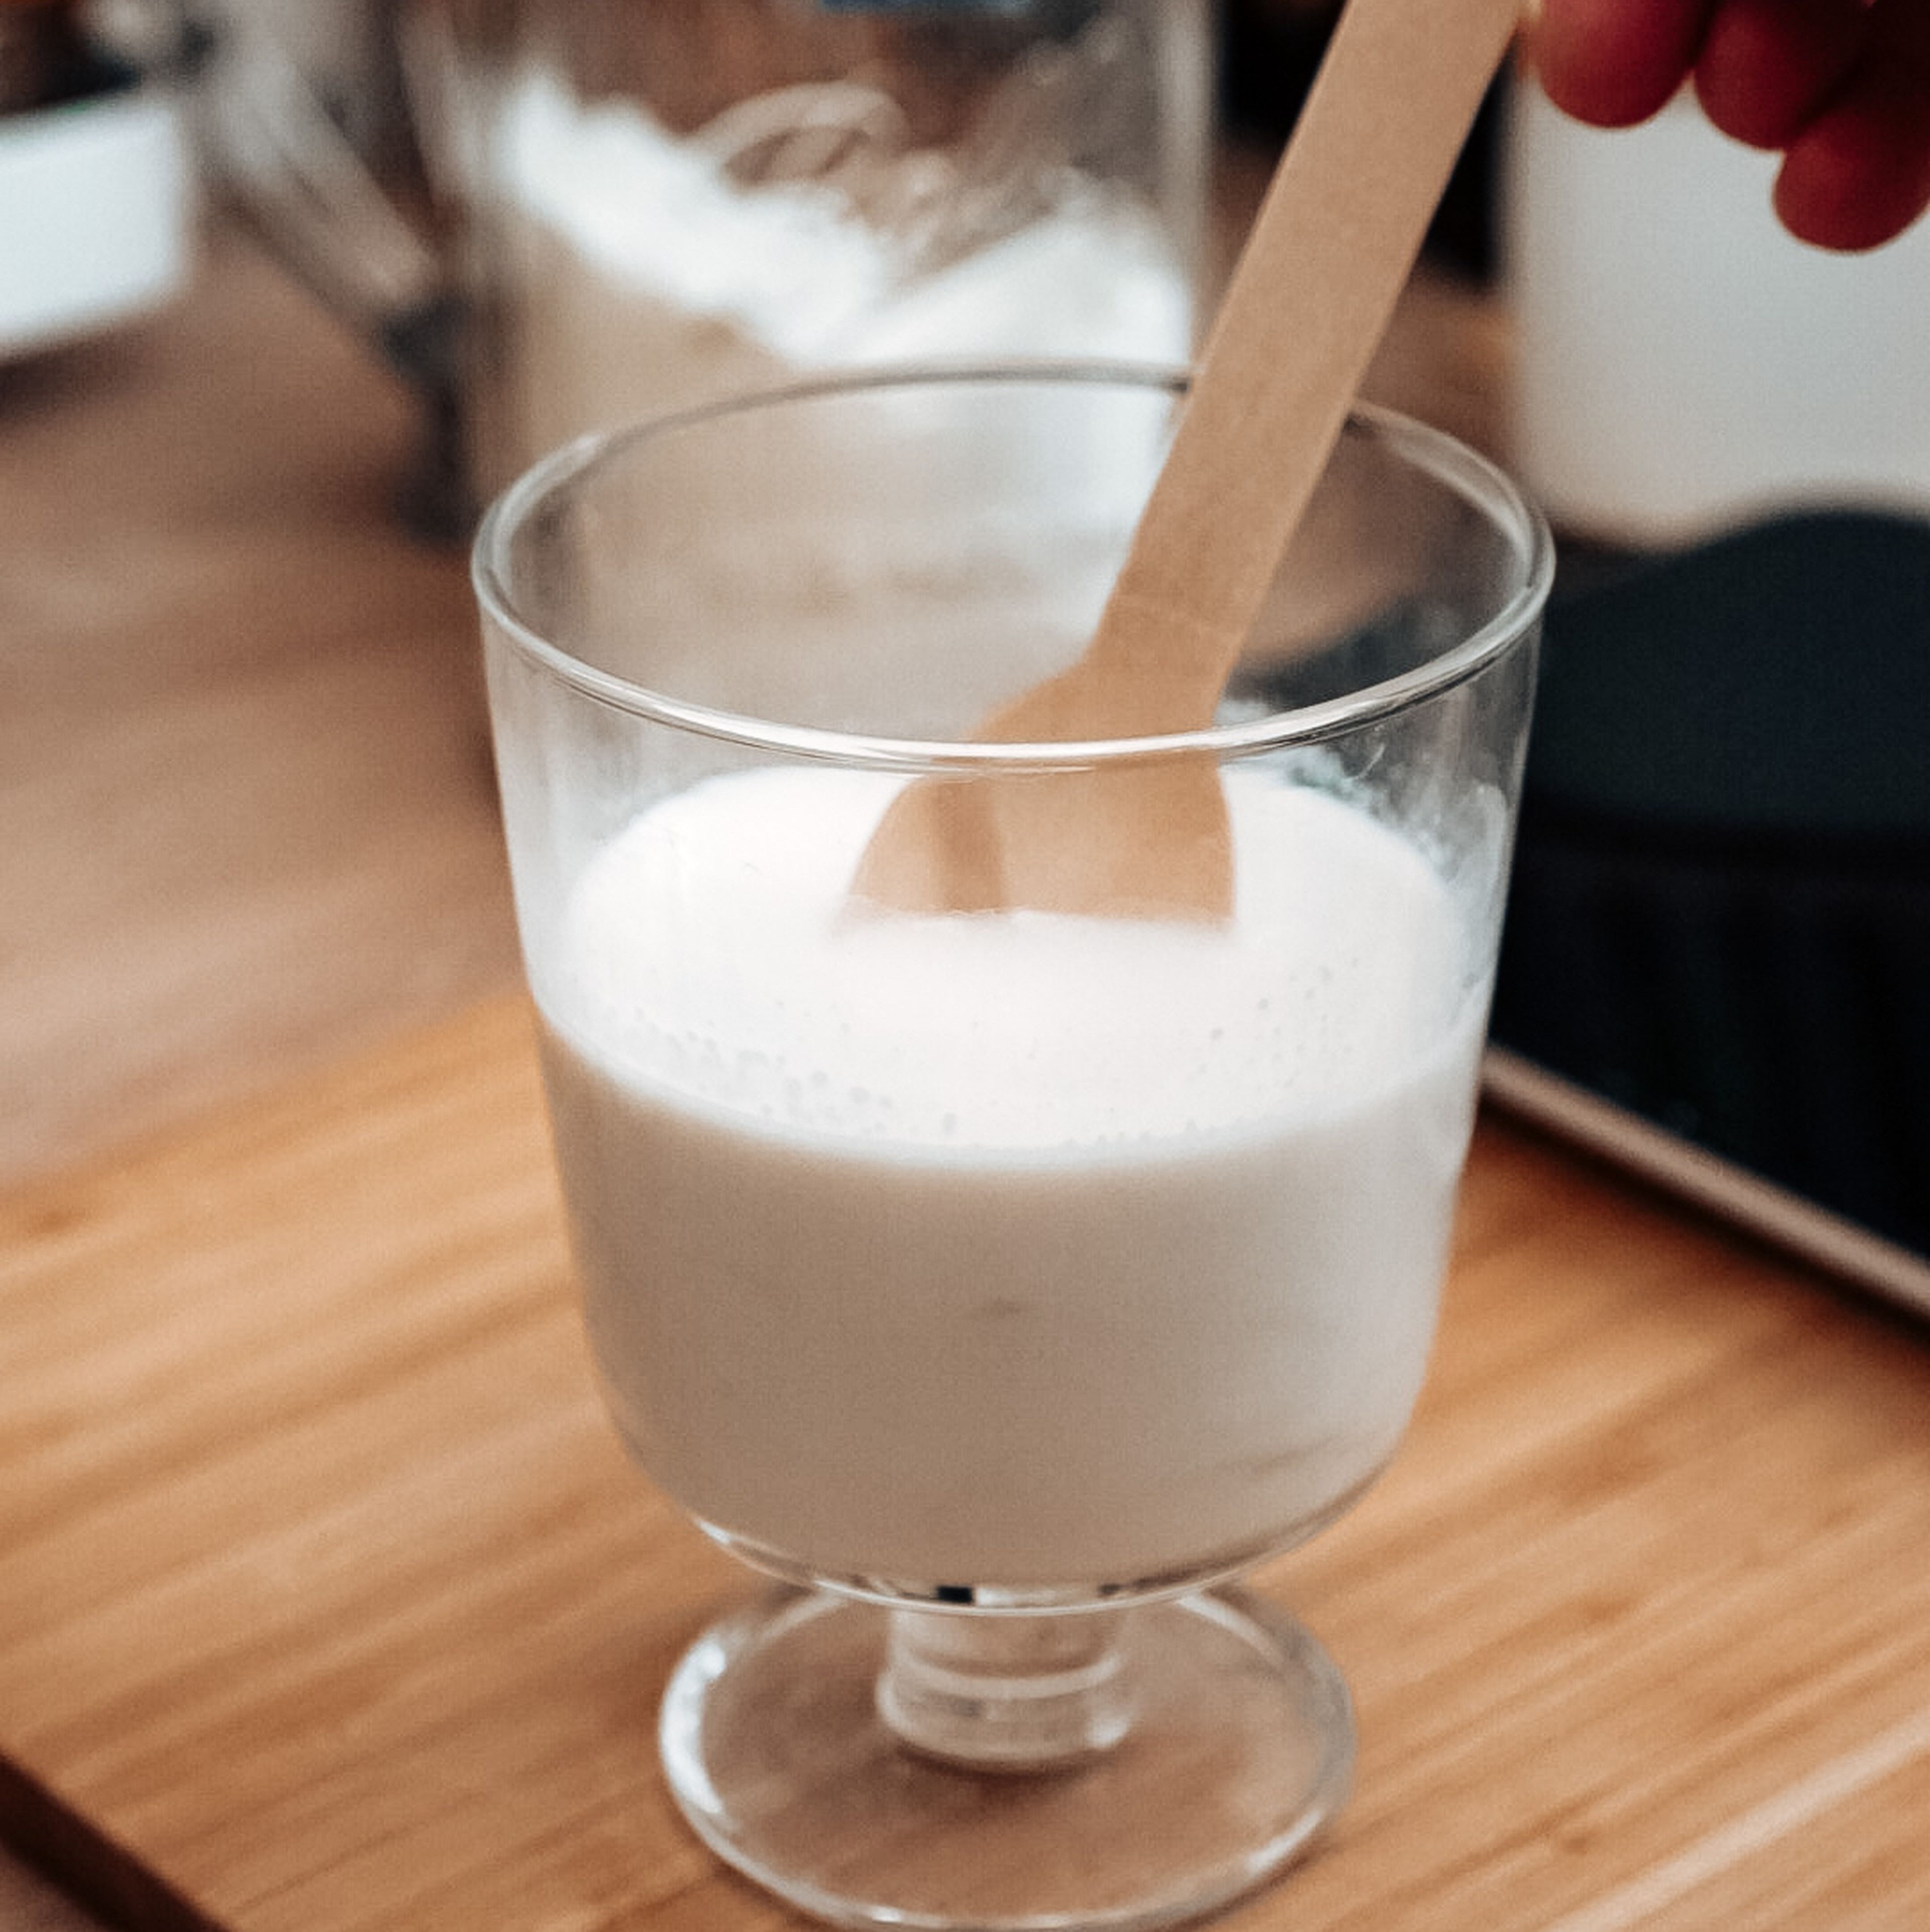 Lauwarme Milch mit der Frischefe in einem Glas verrühren und 10 Minuten stehen lassen.